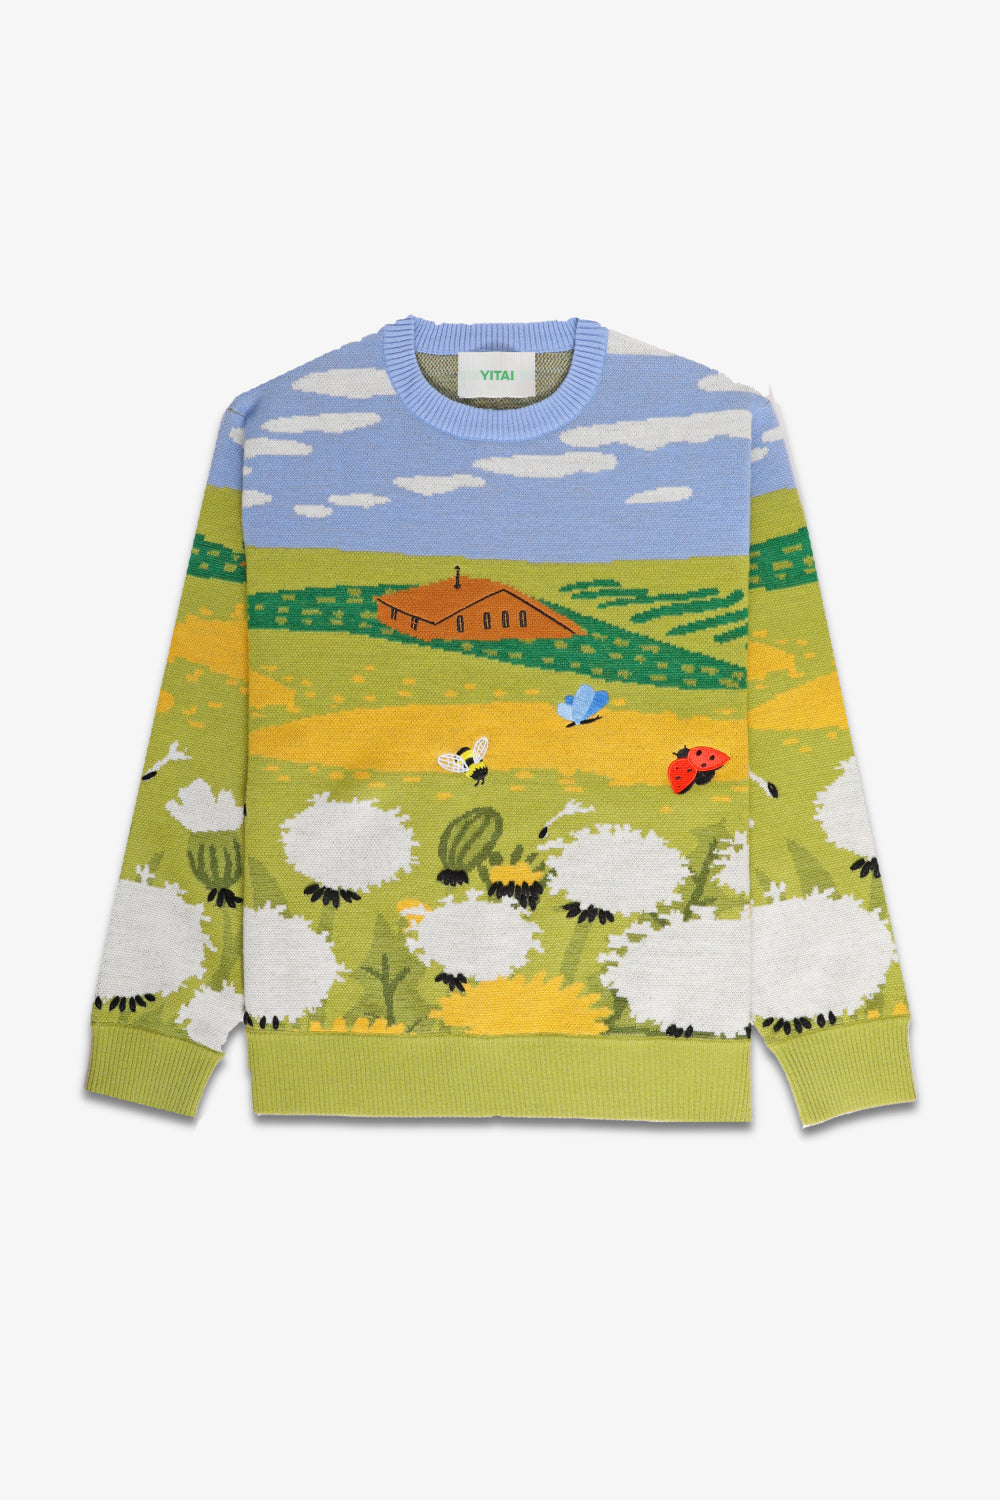 Dandelion Field Sweater